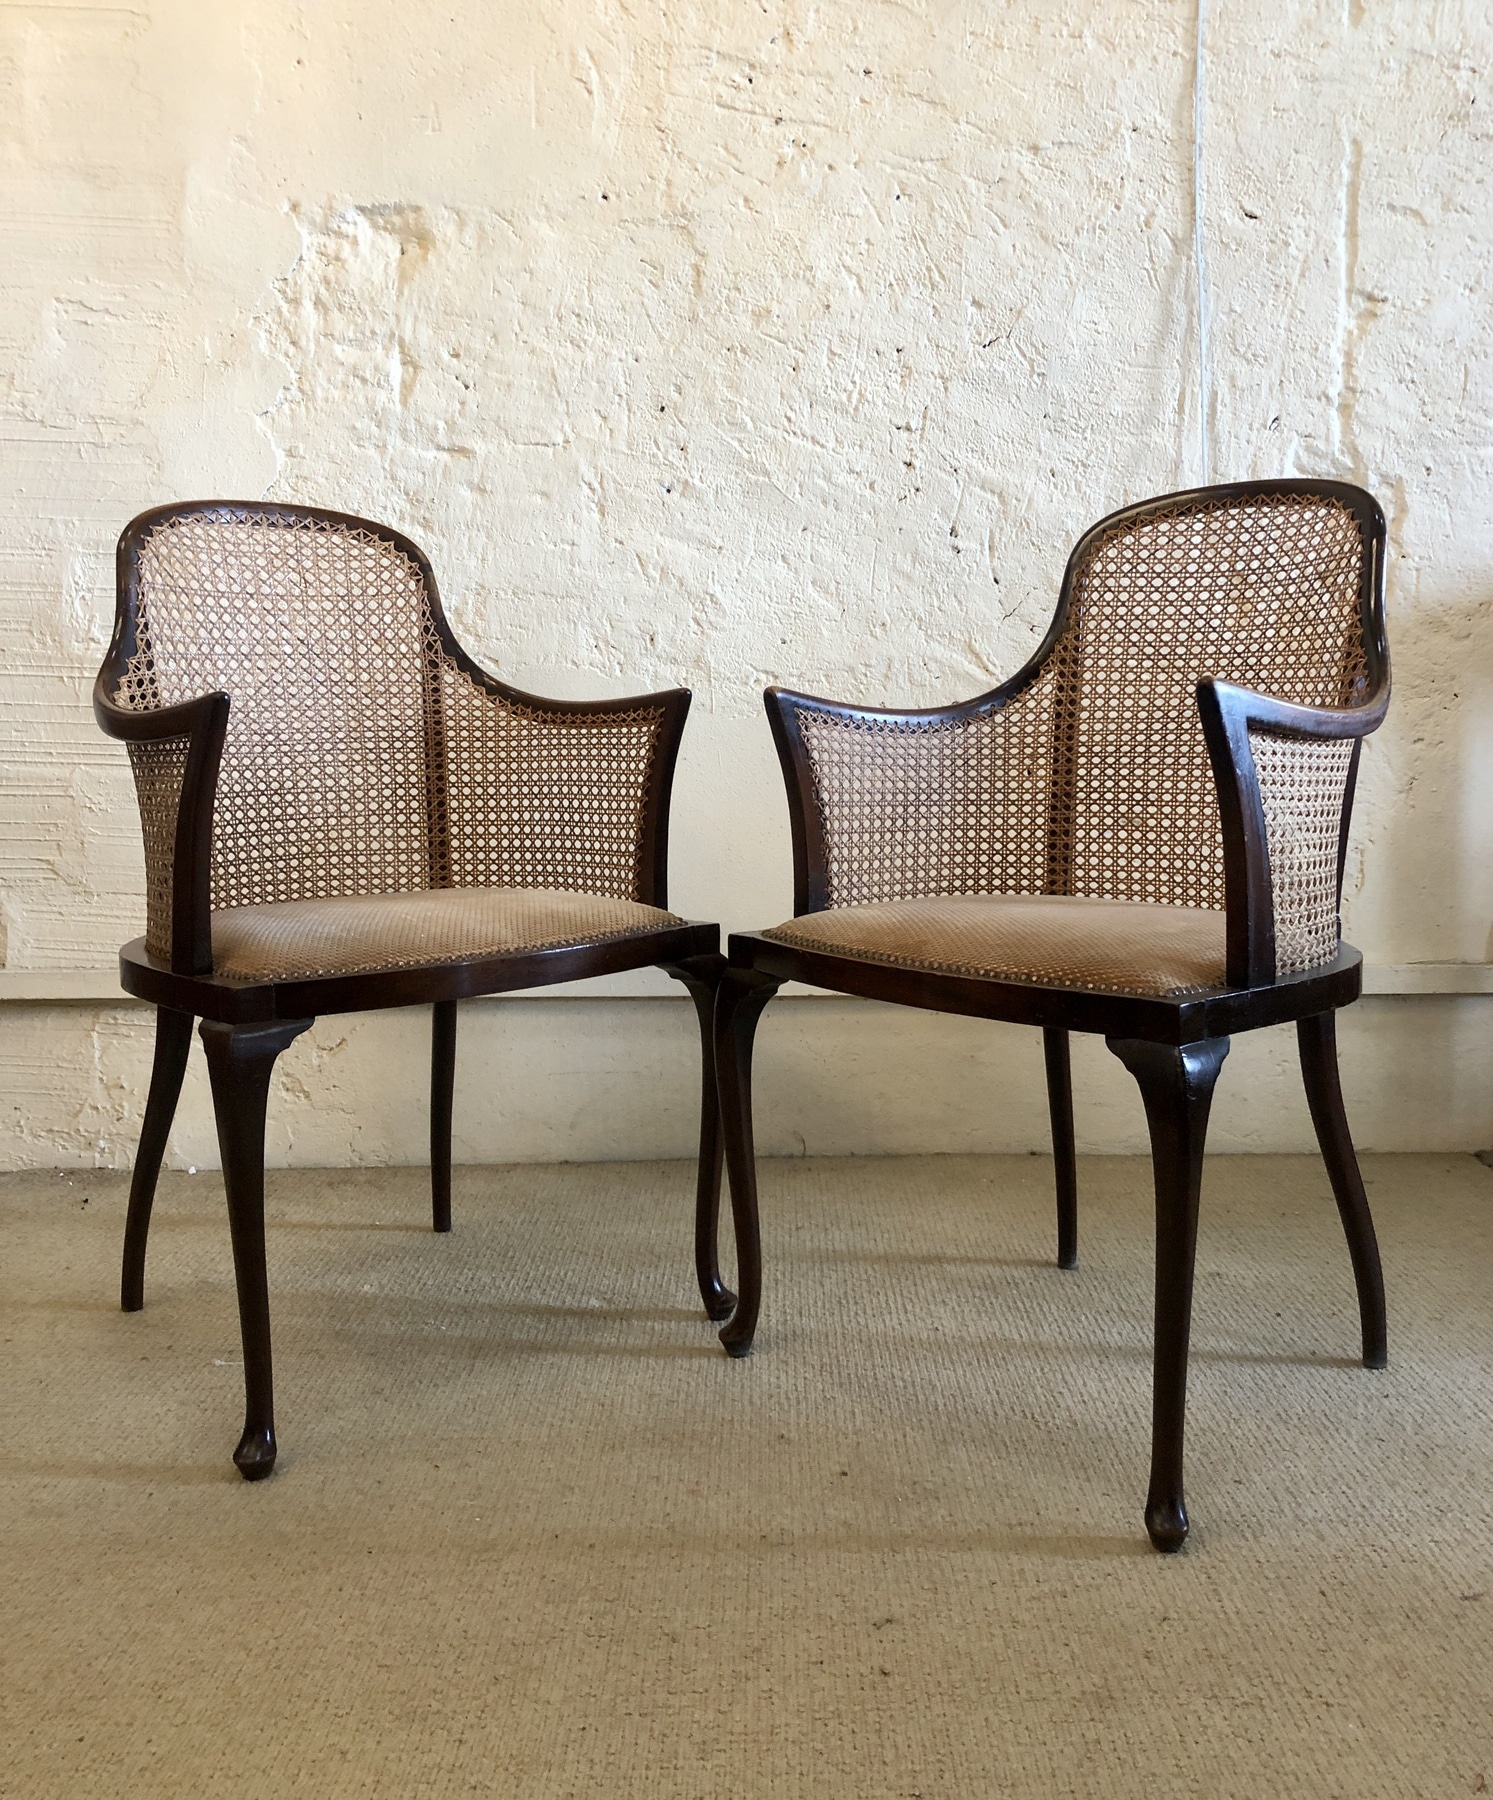 Paire de fauteuils Regency. Angleterre, XIXe siècle